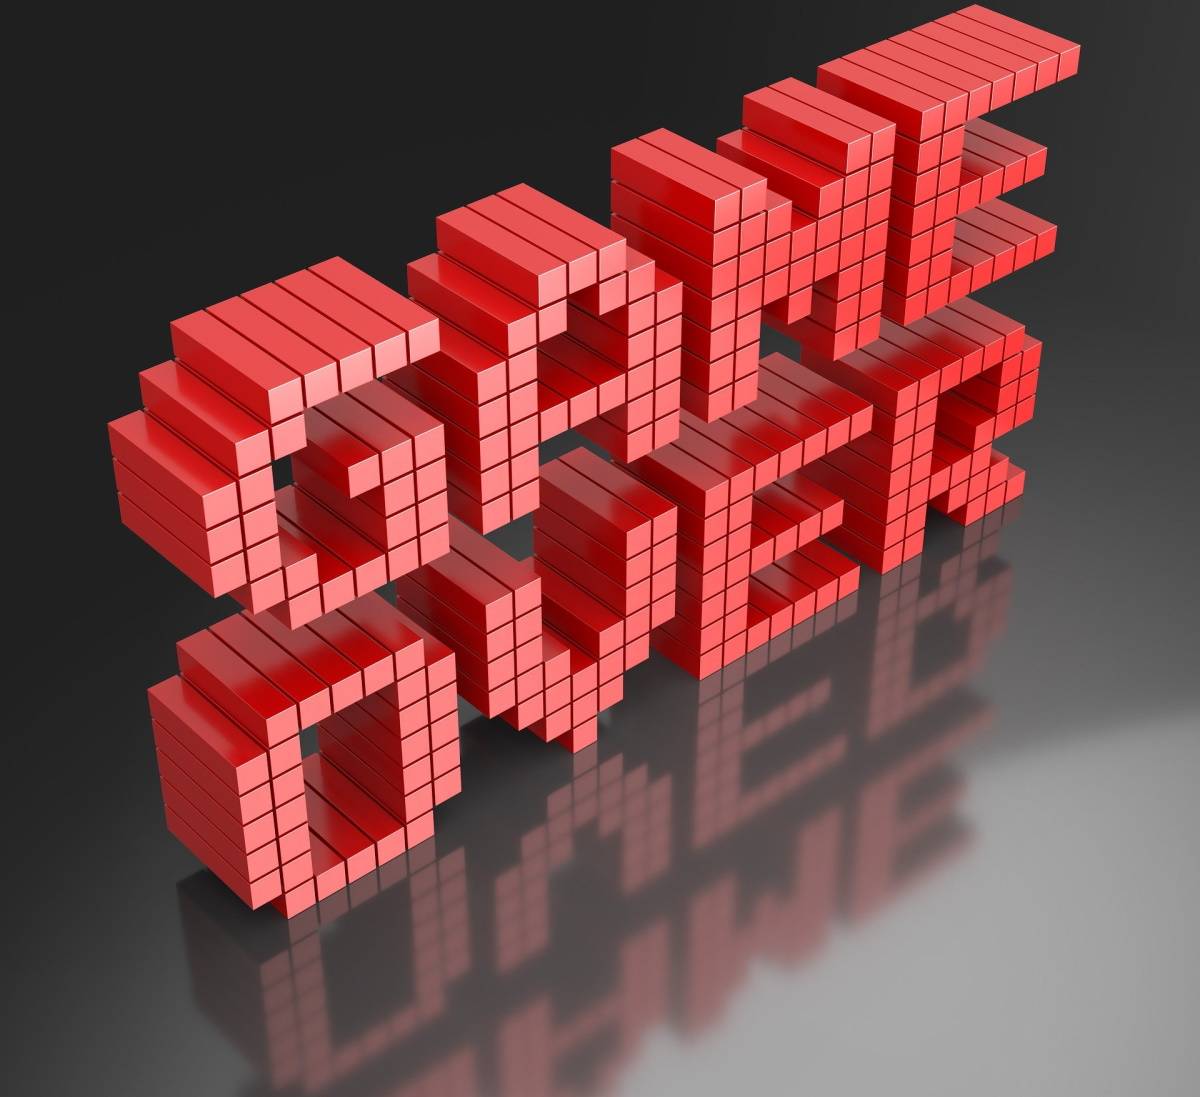  Una imagen con las palabras "Game Over" mostradas en ella.